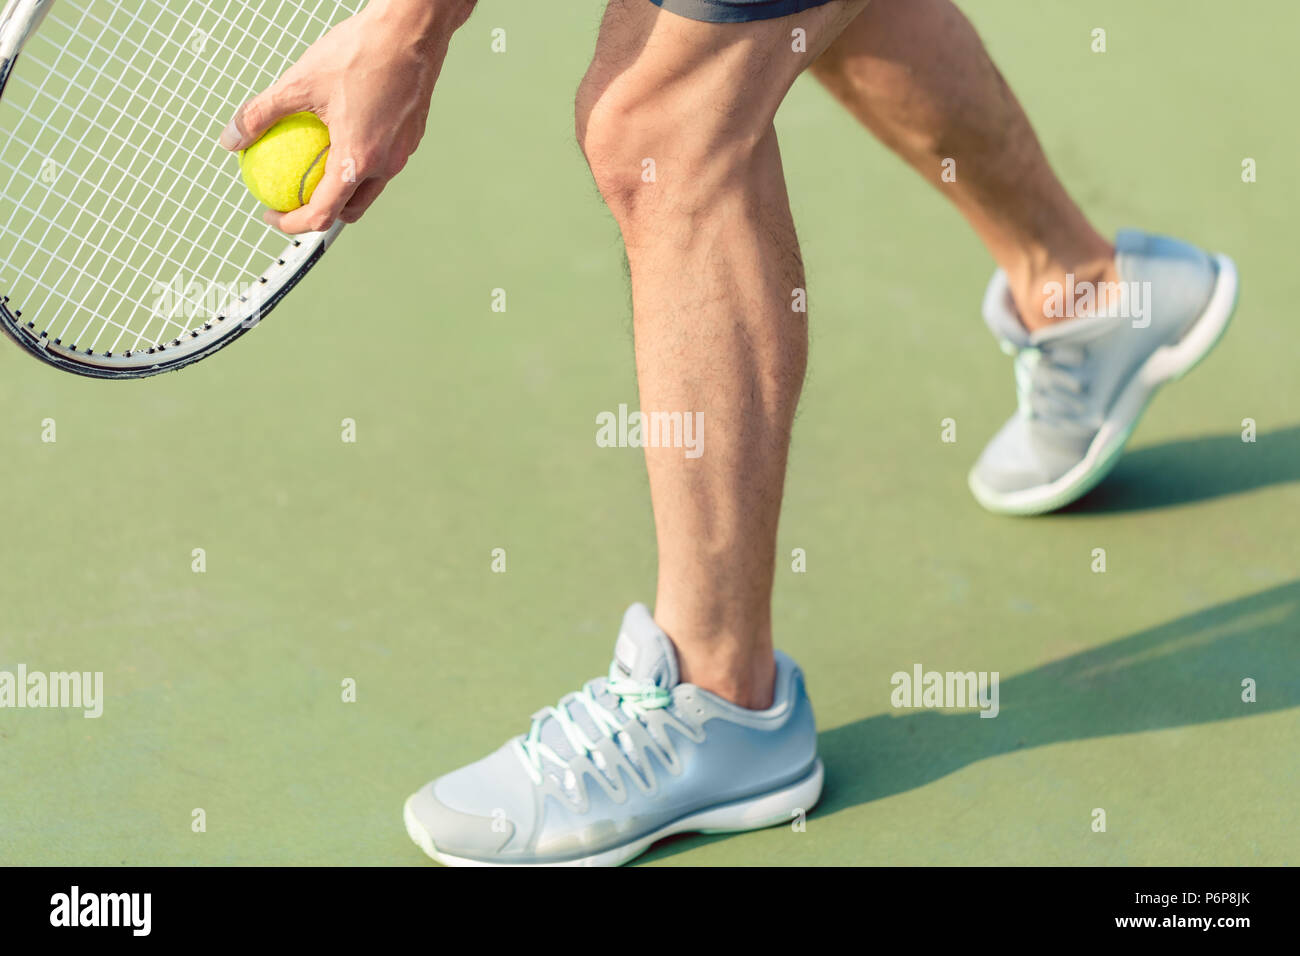 Bajo la sección de un jugador profesional, sosteniendo la pelota y raqueta de tenis Foto de stock